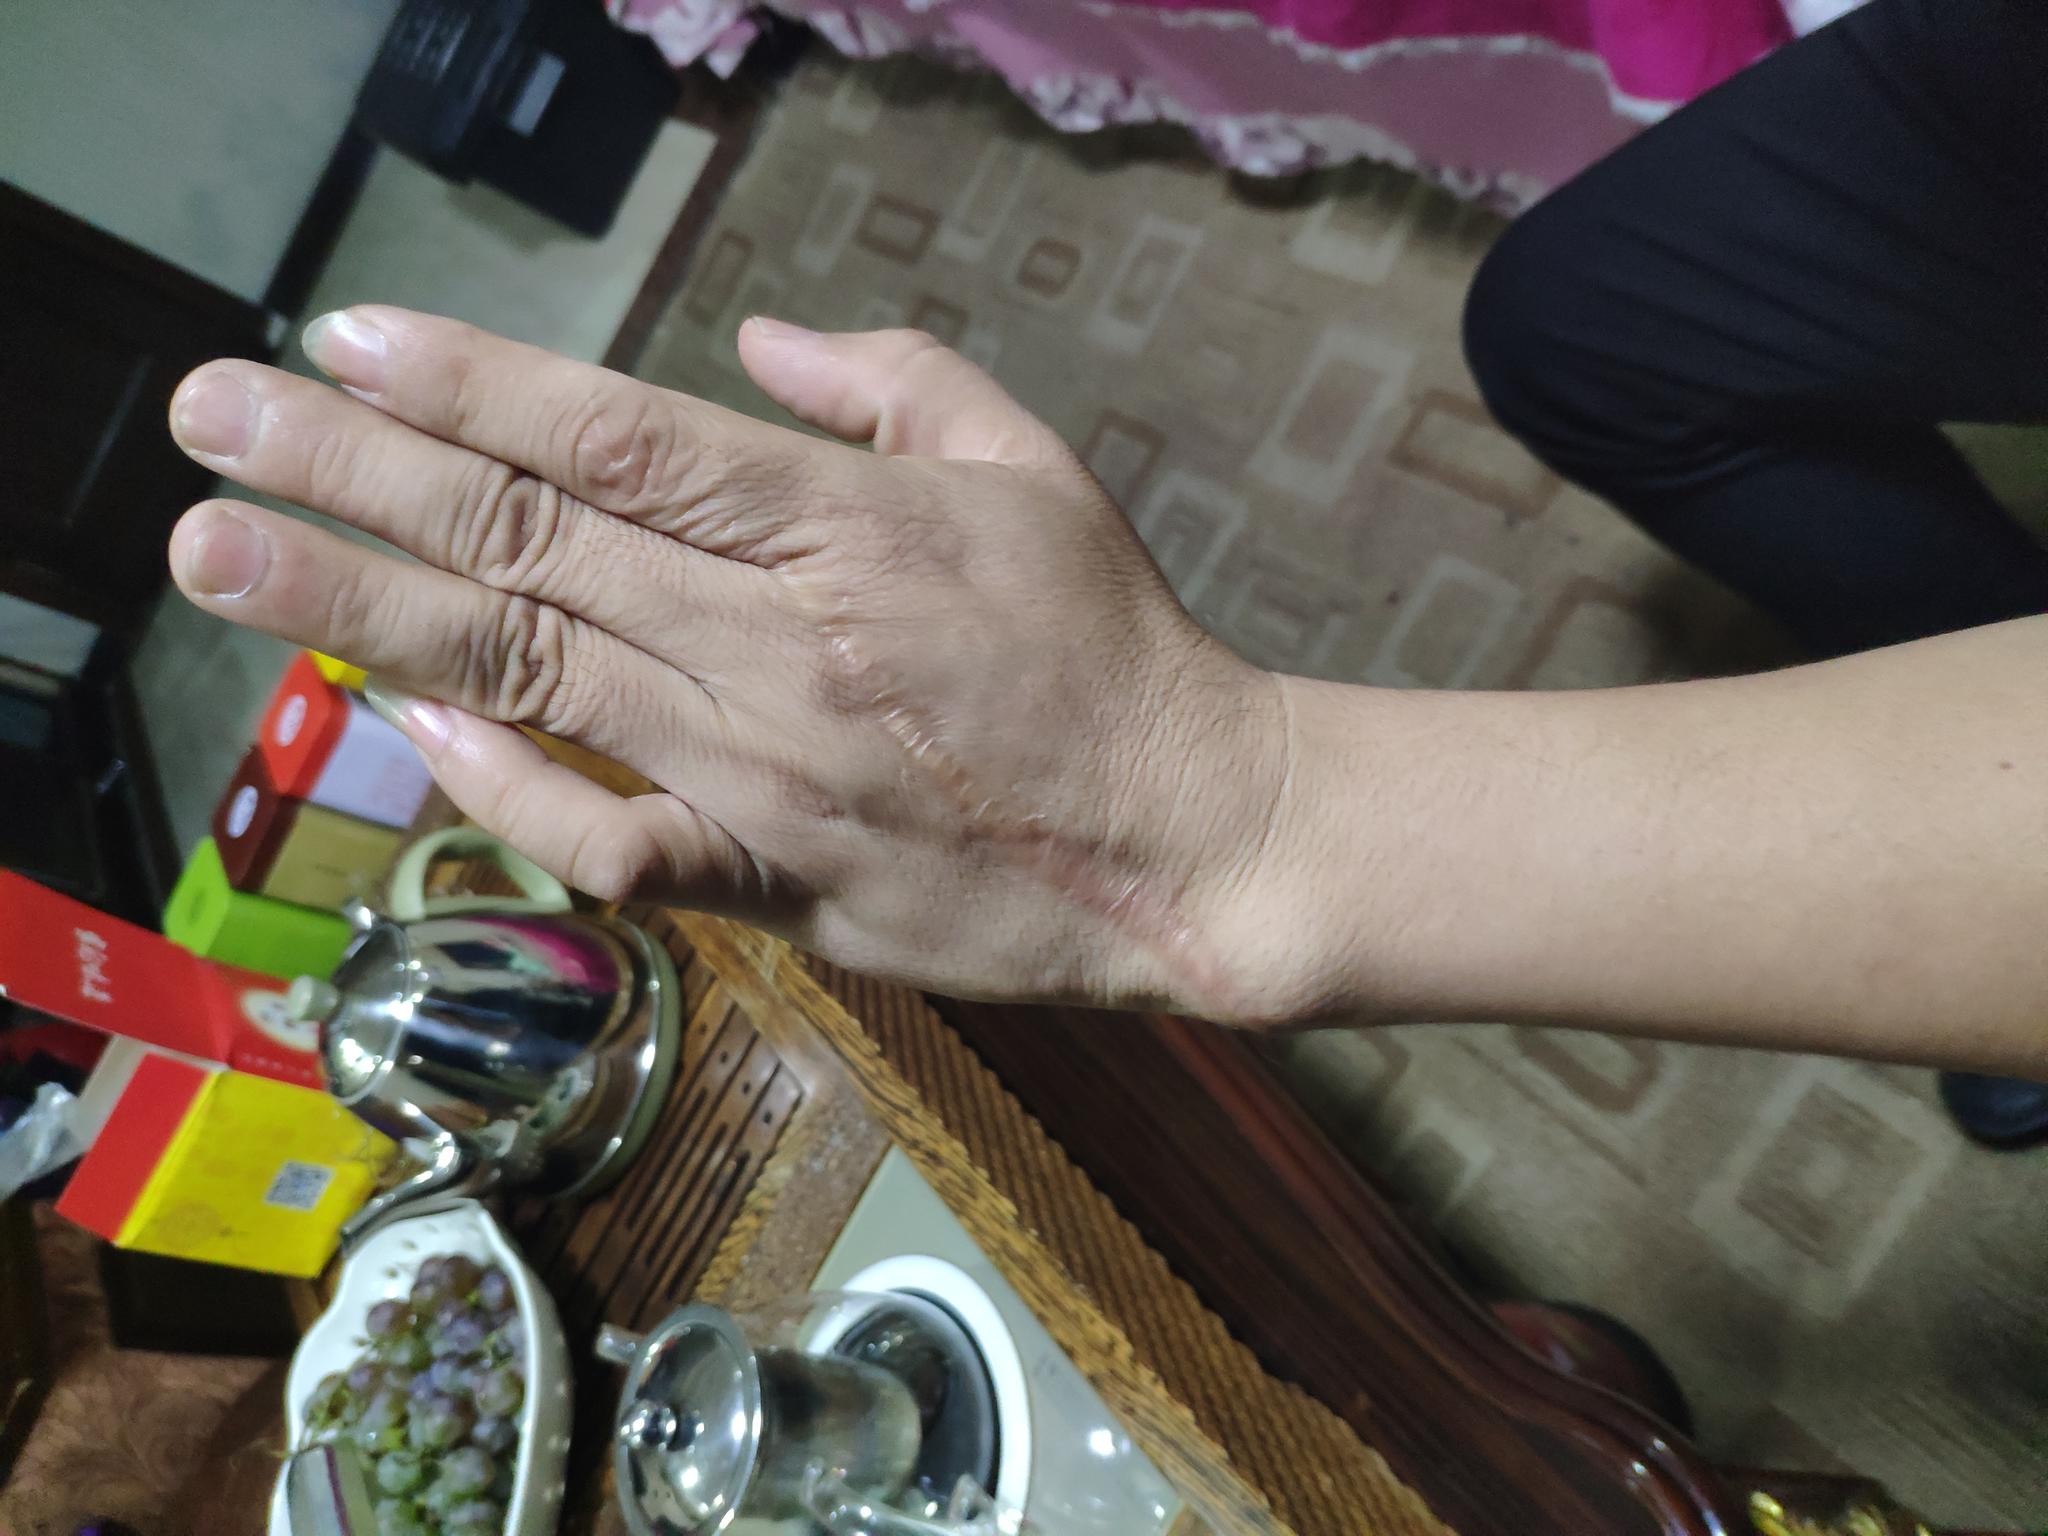 王永宏向记者展示其手上的伤疤，其小拇指至今无法伸直。新京报记者 卢通 摄